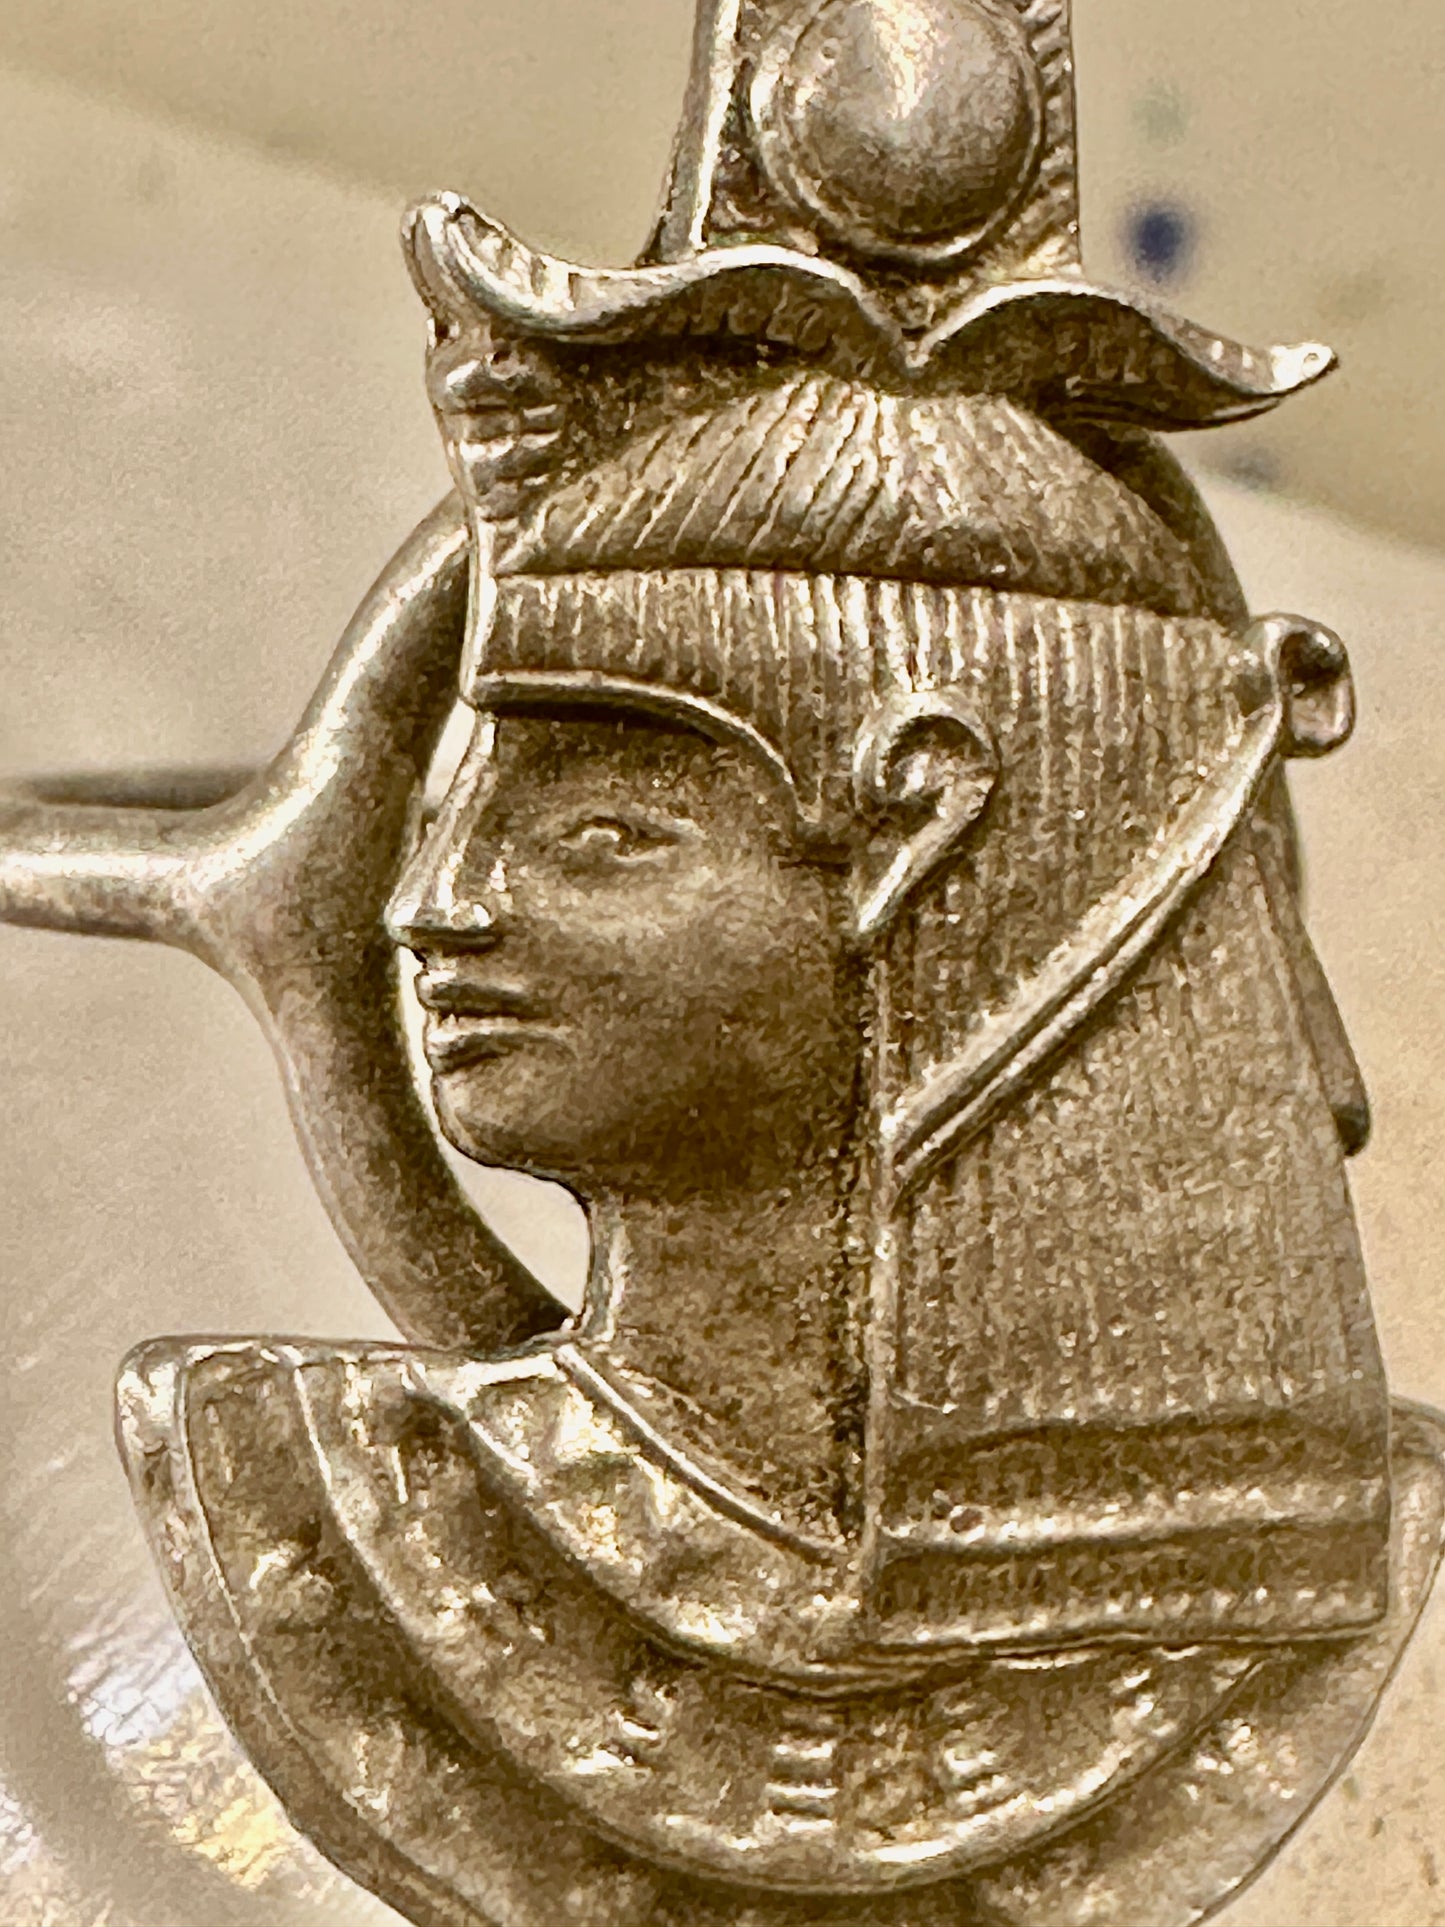 Long Egyptian ring Pharaoh God Goddess size 5.50 sterling silver women